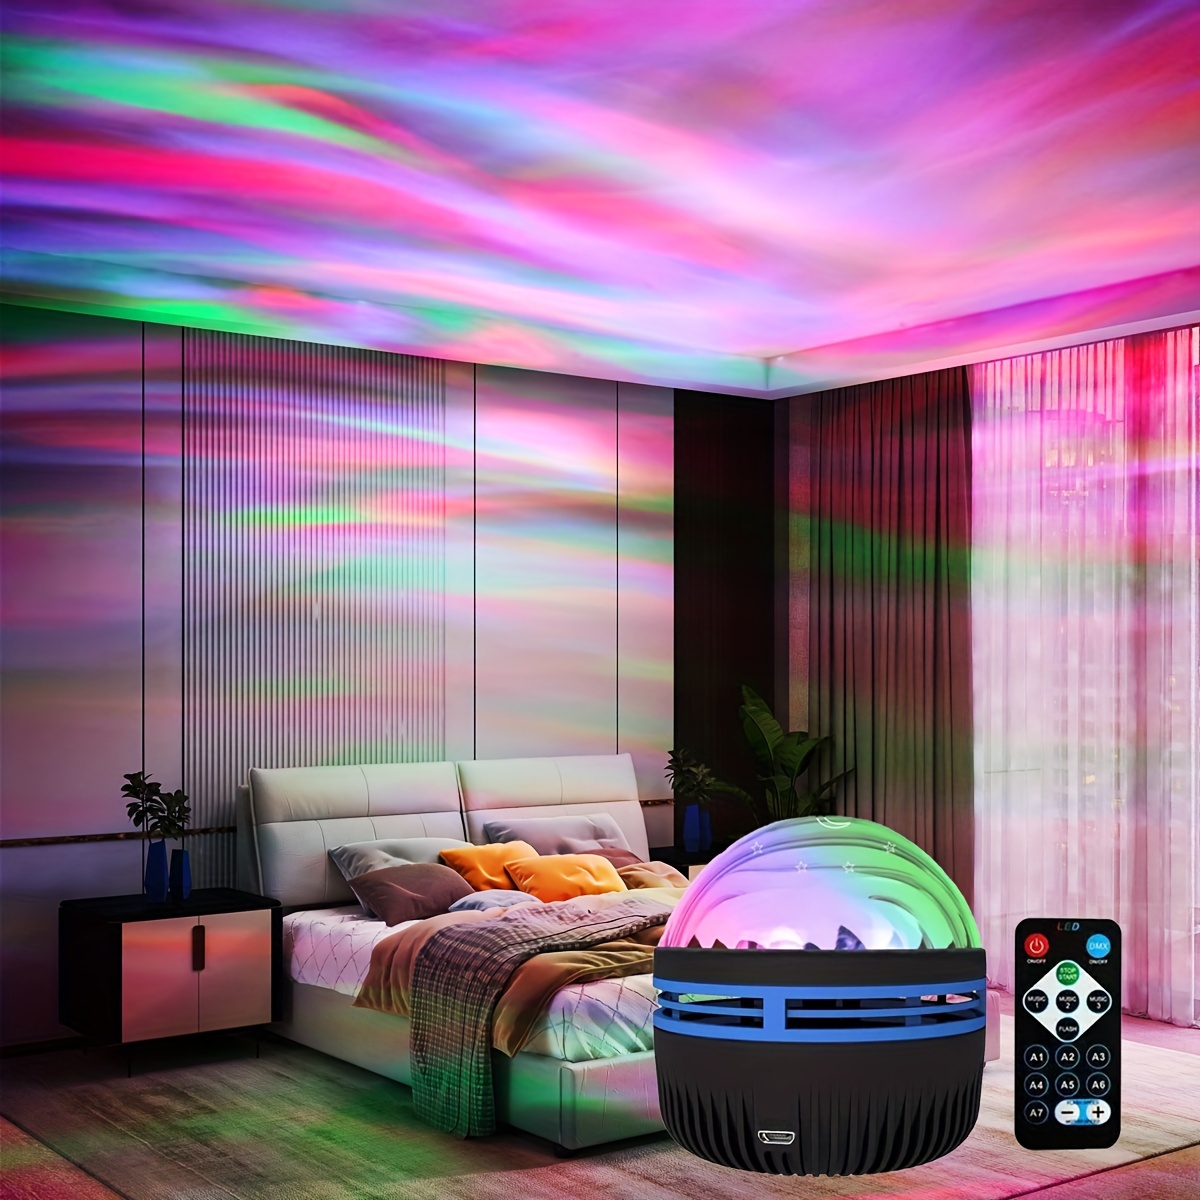 Projecteur Galaxy, projecteur Star 3 en 1 Night Light avec LED Cloud avec  haut-parleur Bluetooth pour 1 à 16 ans Chambre bébé enfant / Chambres de